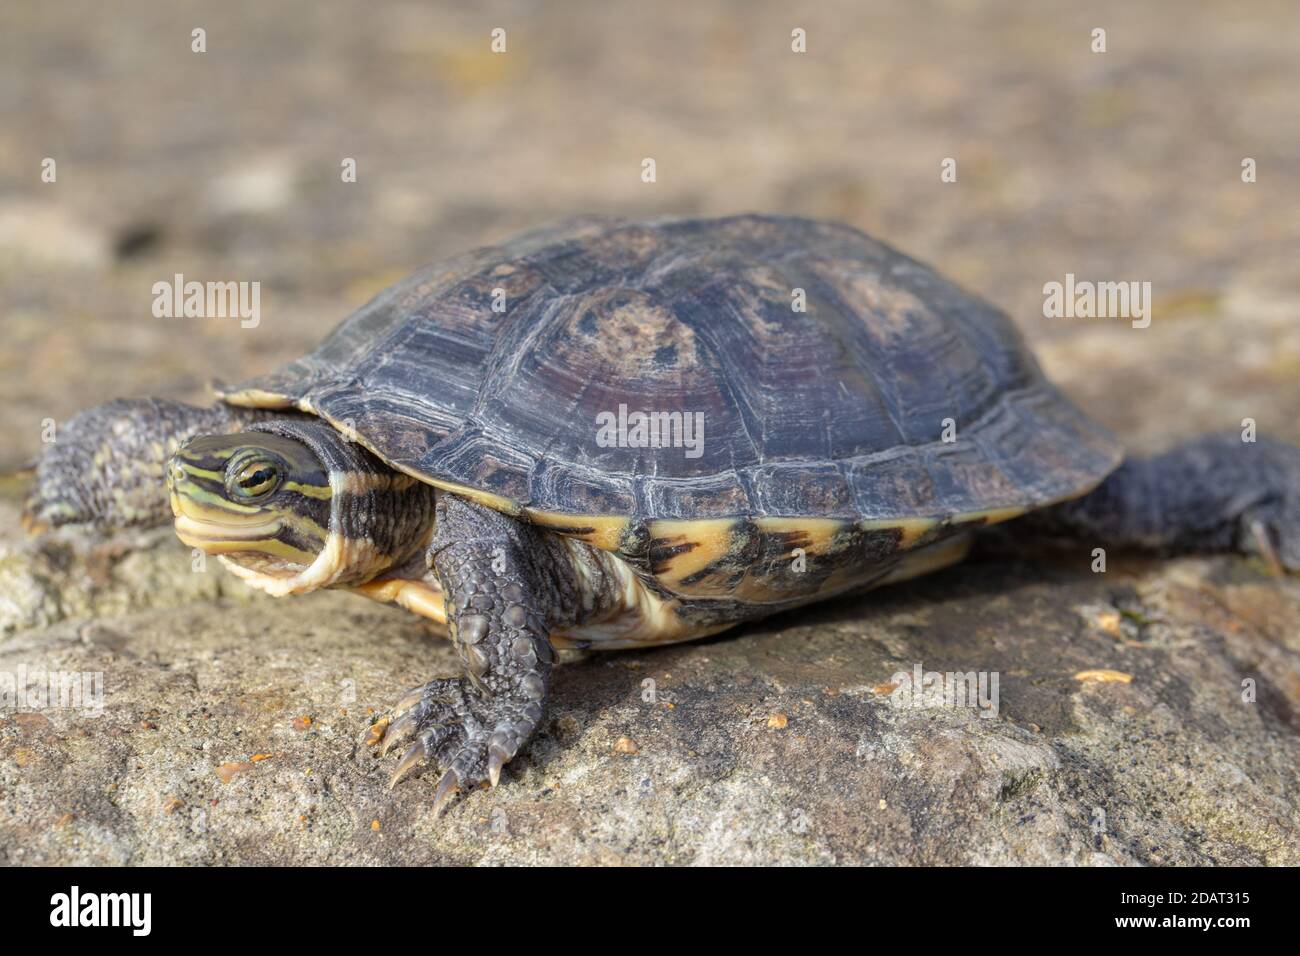 Vietnamesische oder Annan Pond Turtle oder Vietnamesische Blattschildkröte (Mauremys annamensis). Aus der Provinz Quang Nam, Annam, Zentralvietnam. Kritisch Bedroht Stockfoto